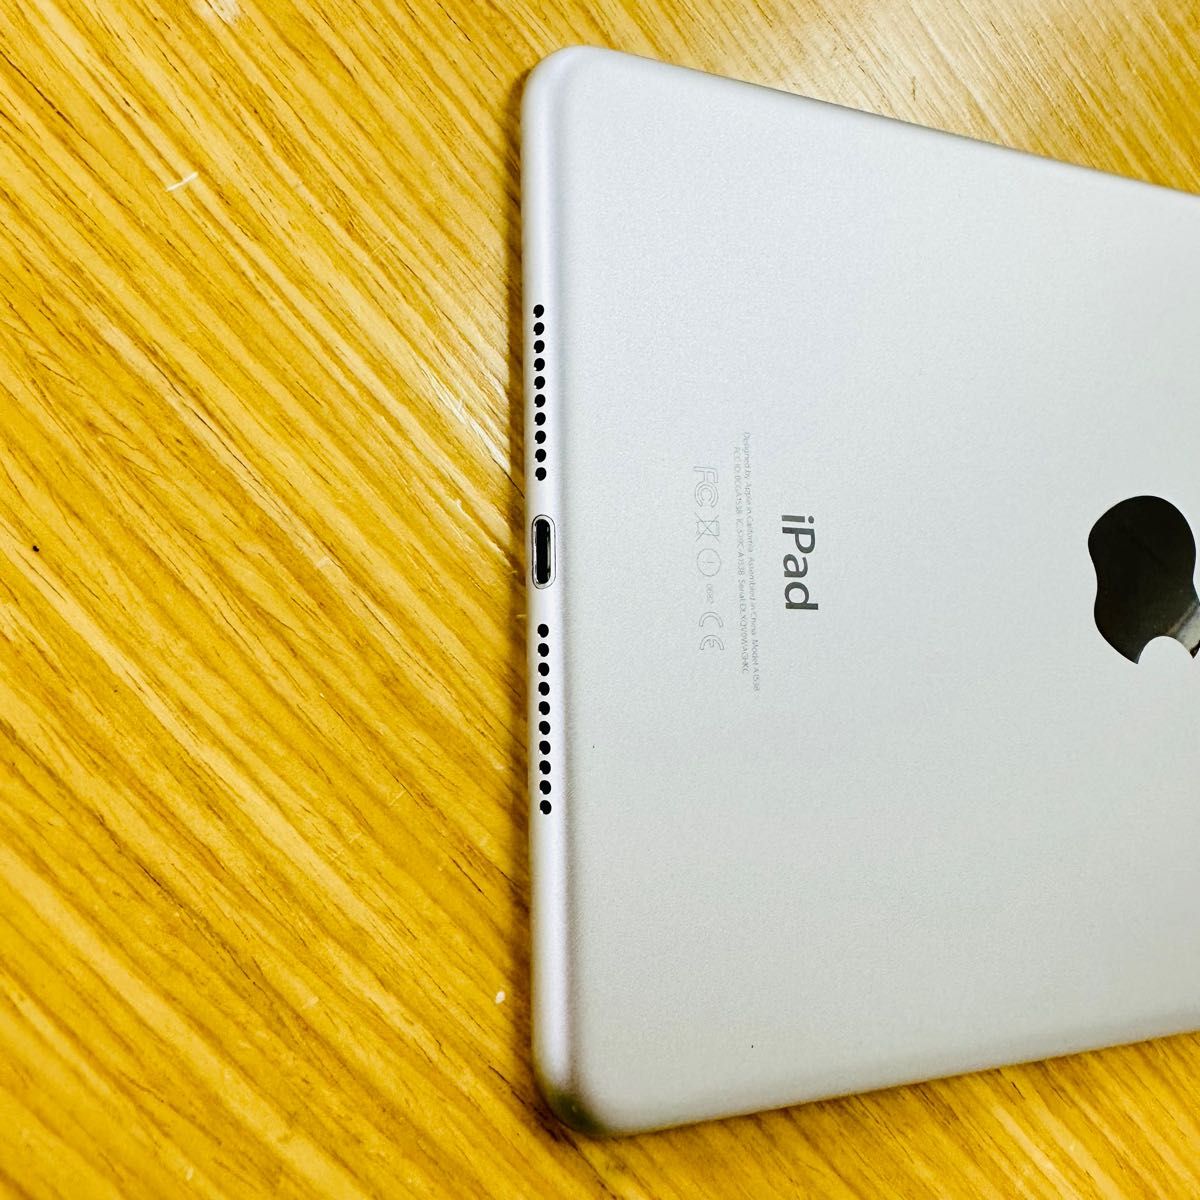 Apple iPad mini 4 16GB Wifi モデルバッテリー100% | alfasaac.com